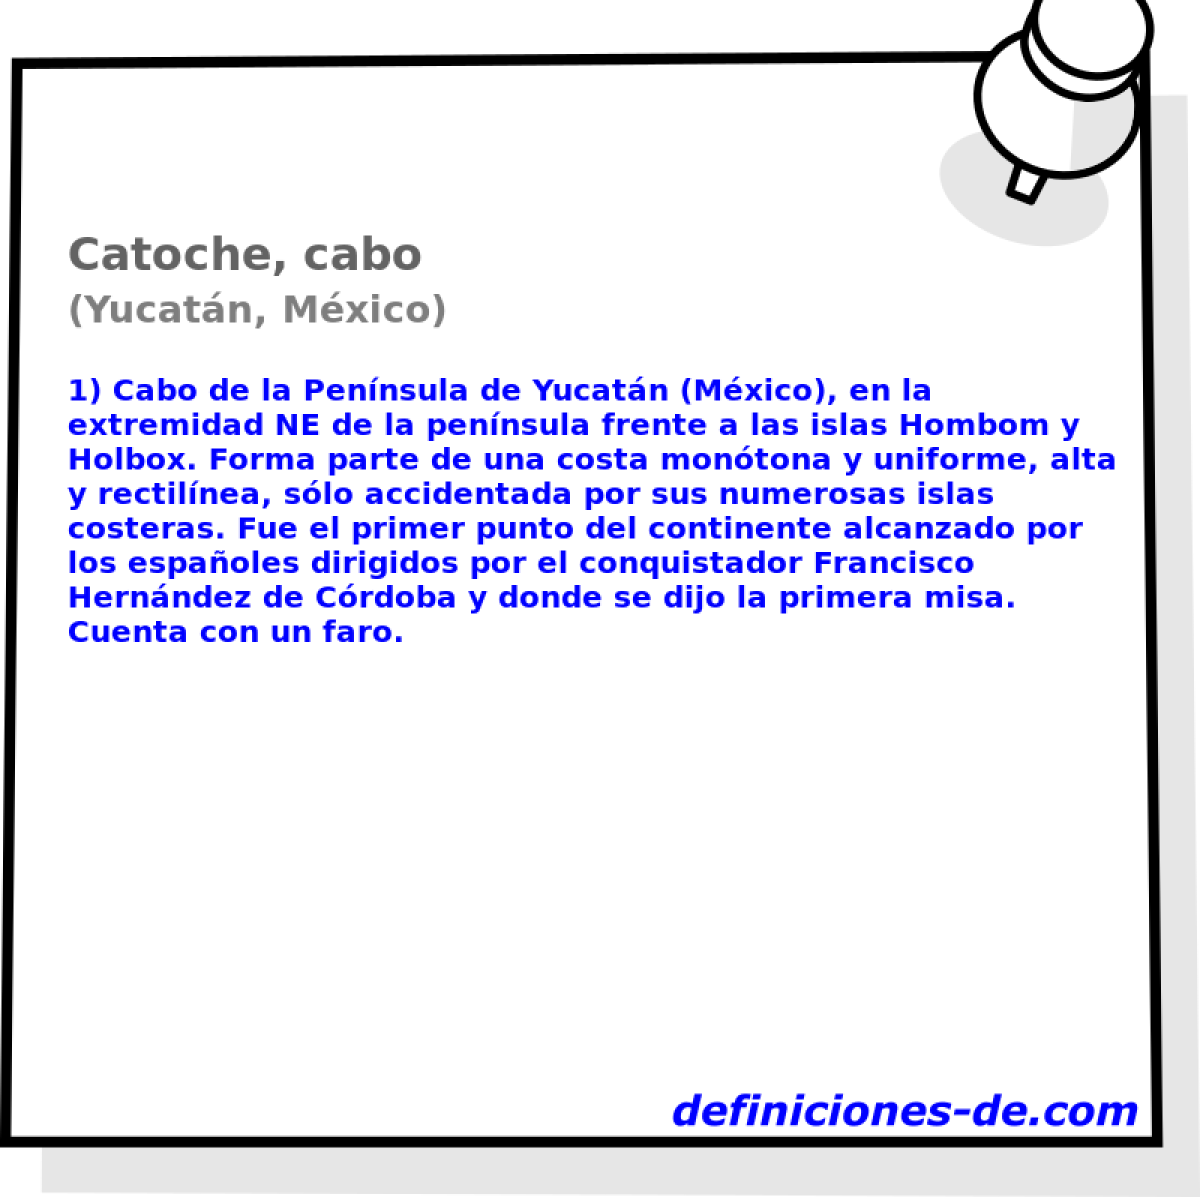 Catoche, cabo (Yucatn, Mxico)